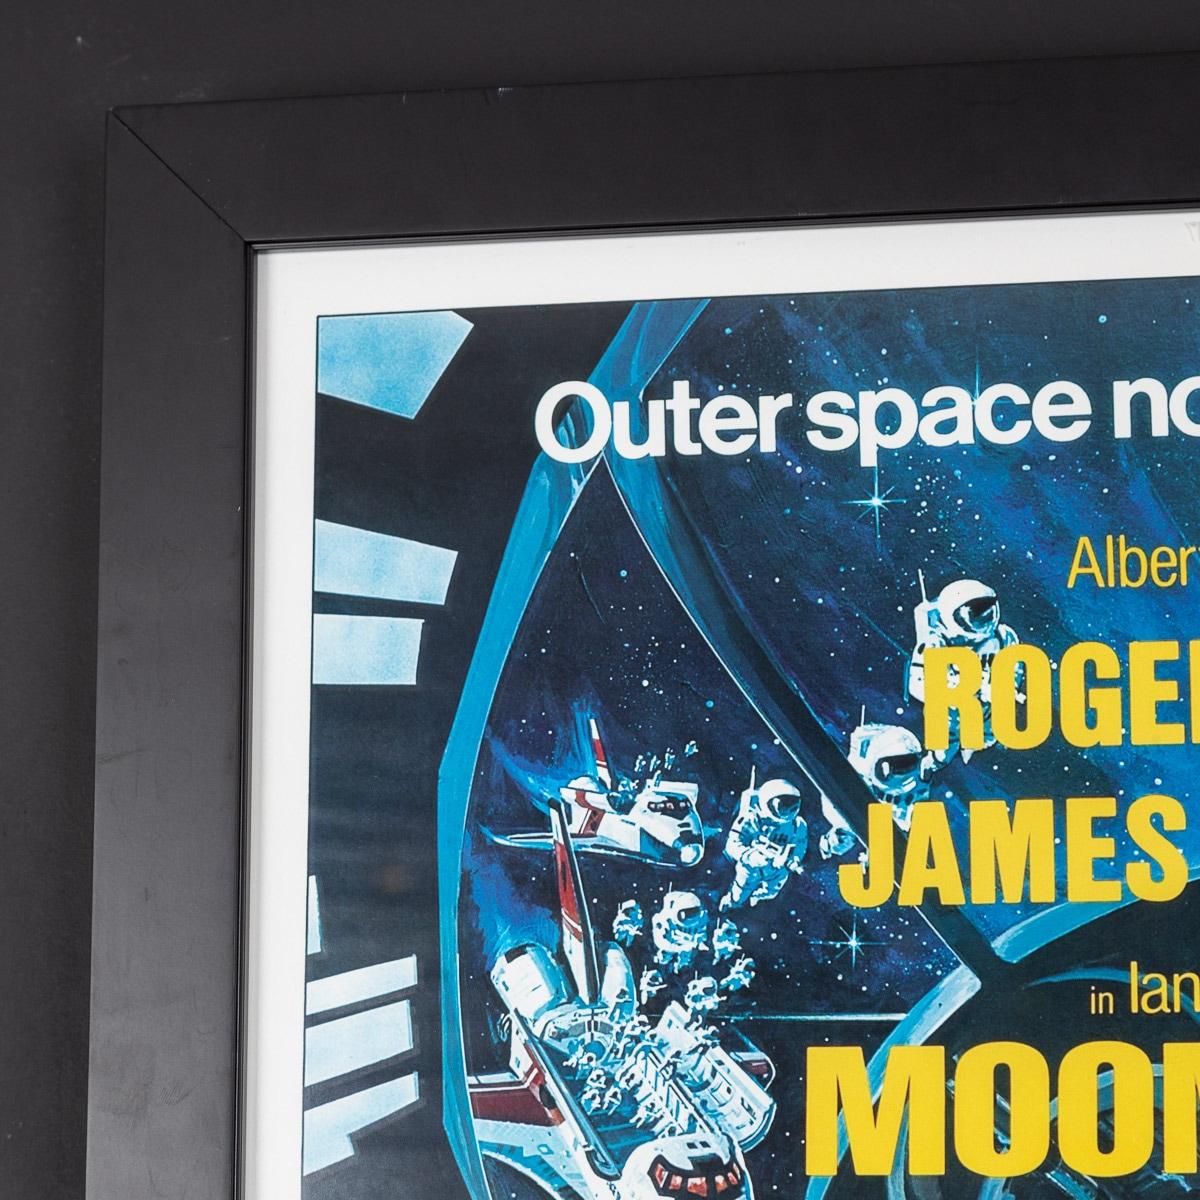 Ein sehr seltenes und originales britisches (UK) Veröffentlichungsplakat aus dem Blockbuster Moonraker (1979), signiert von Roger Moore. Dies war der elfte Film der James-Bond-Reihe, der von Eon Productions produziert wurde, und der vierte mit Roger